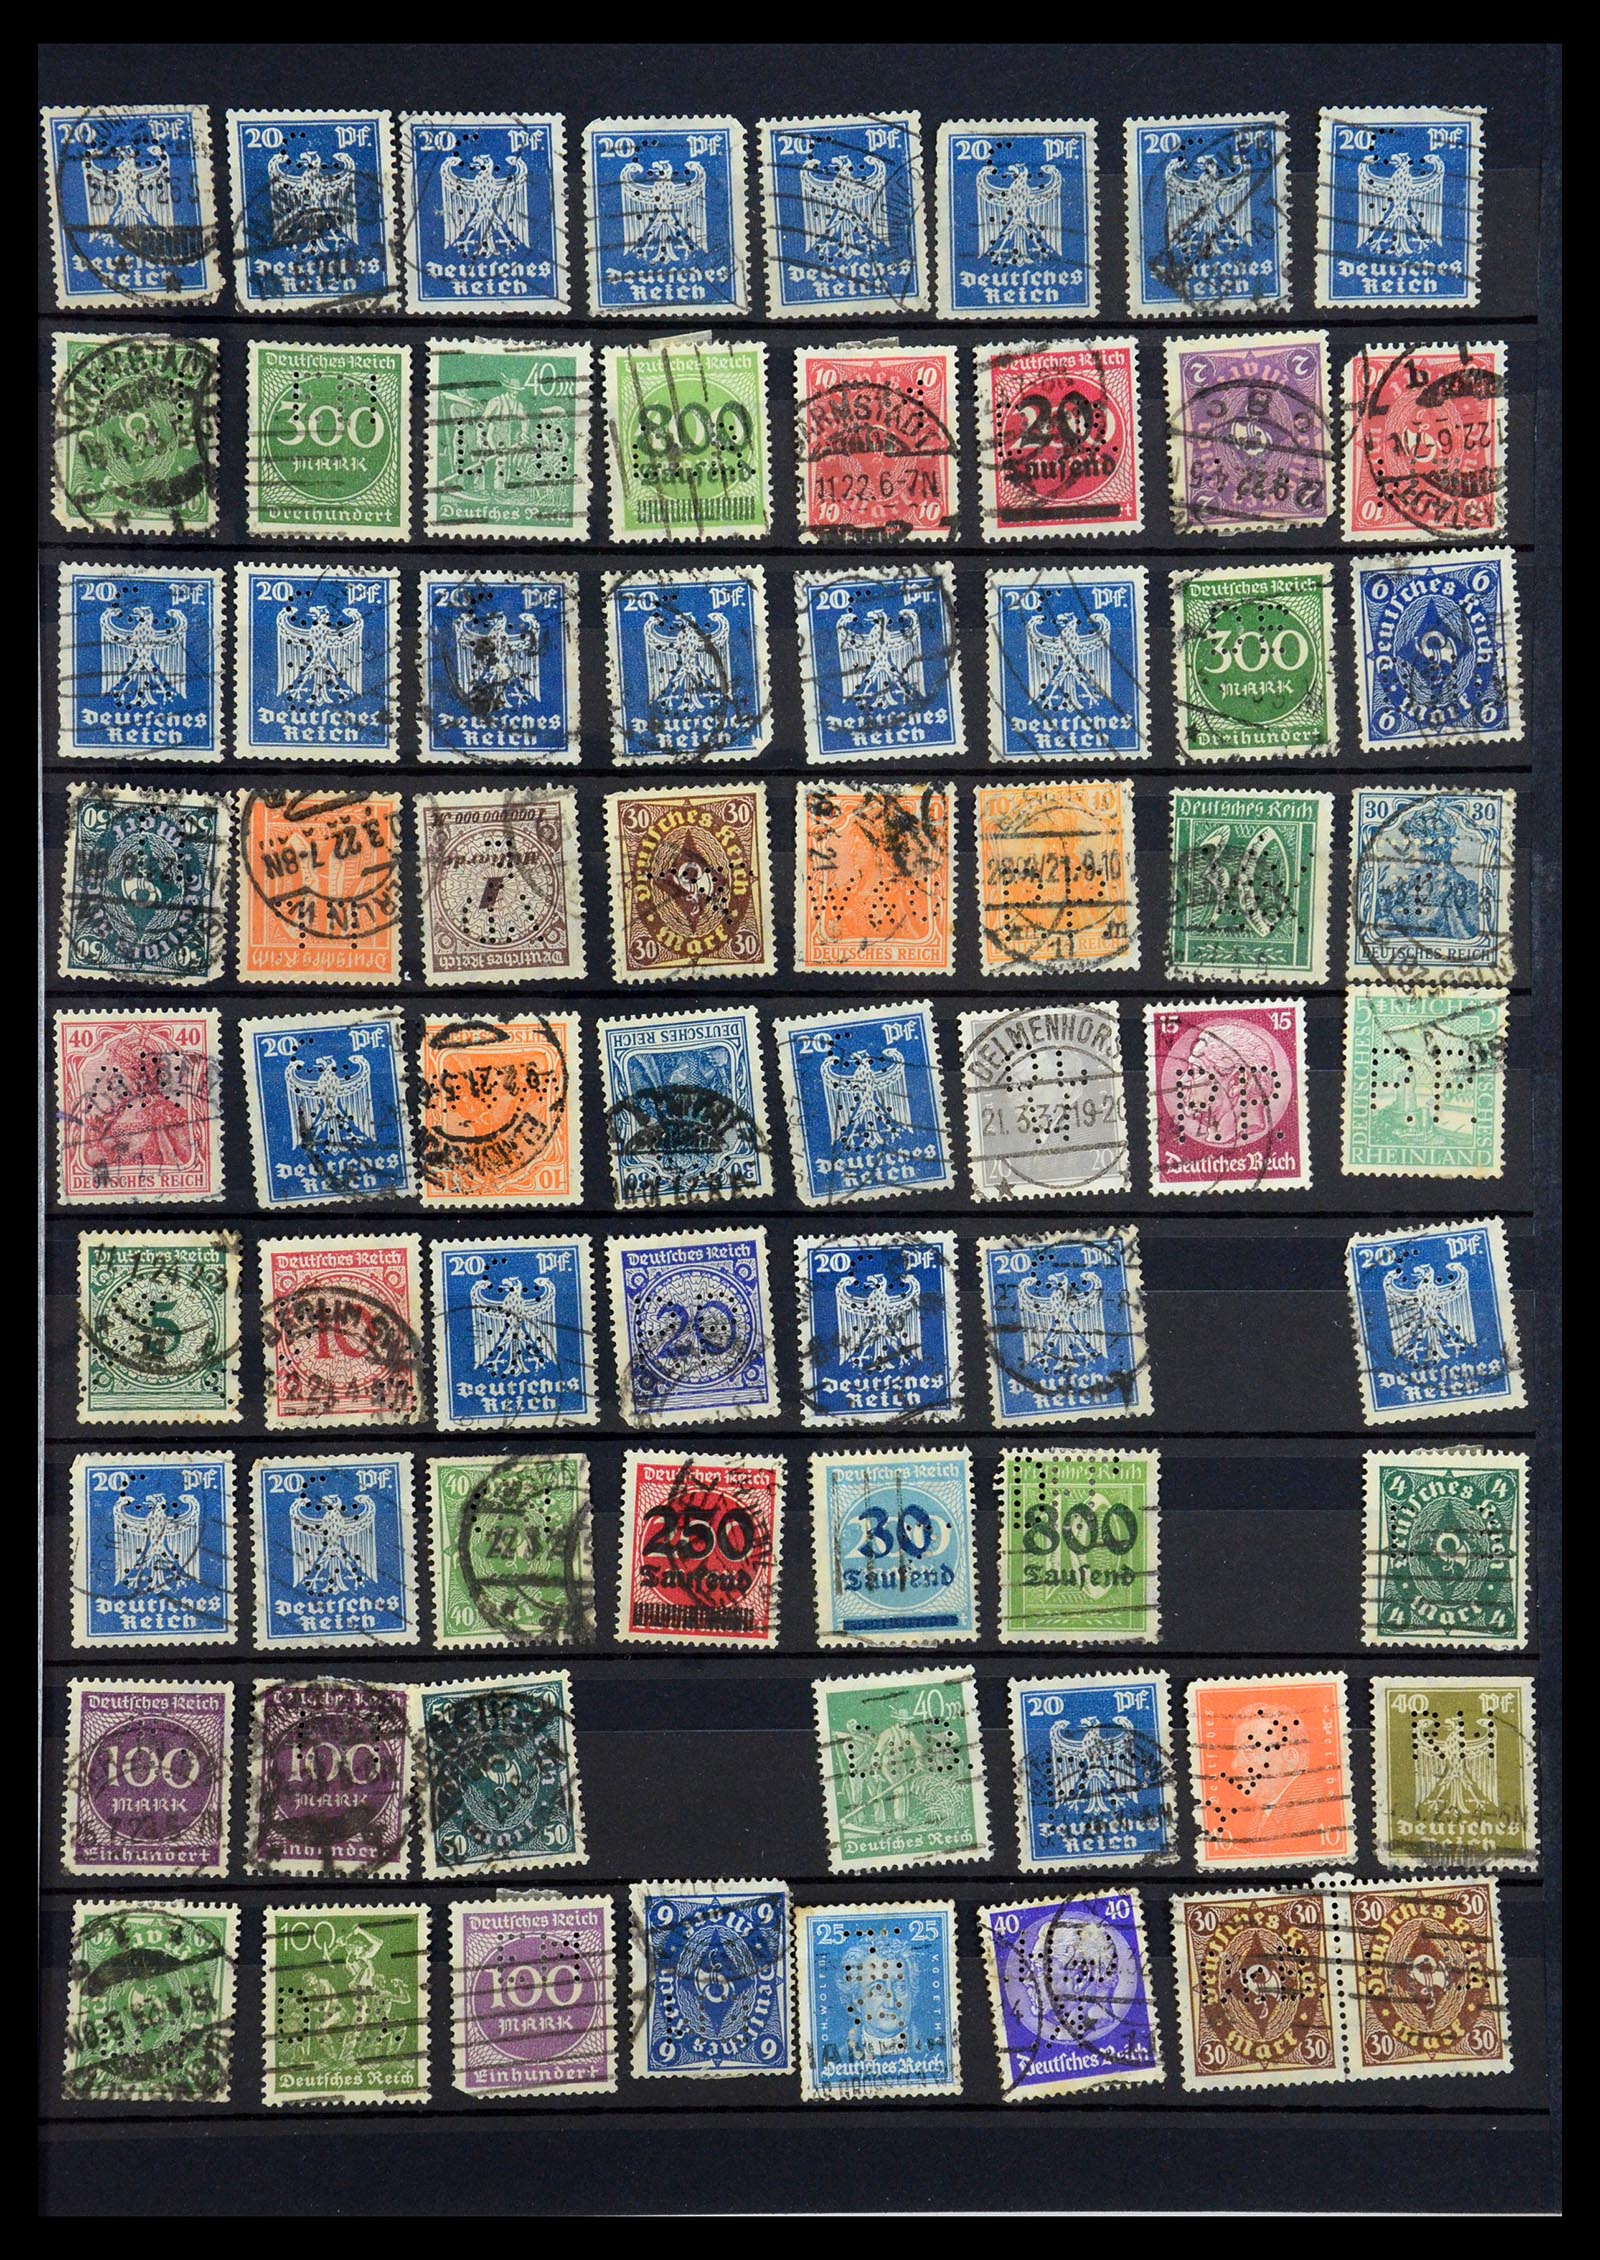 35183 043 - Stamp Collection 35183 German Reich perfins 1880-1945.